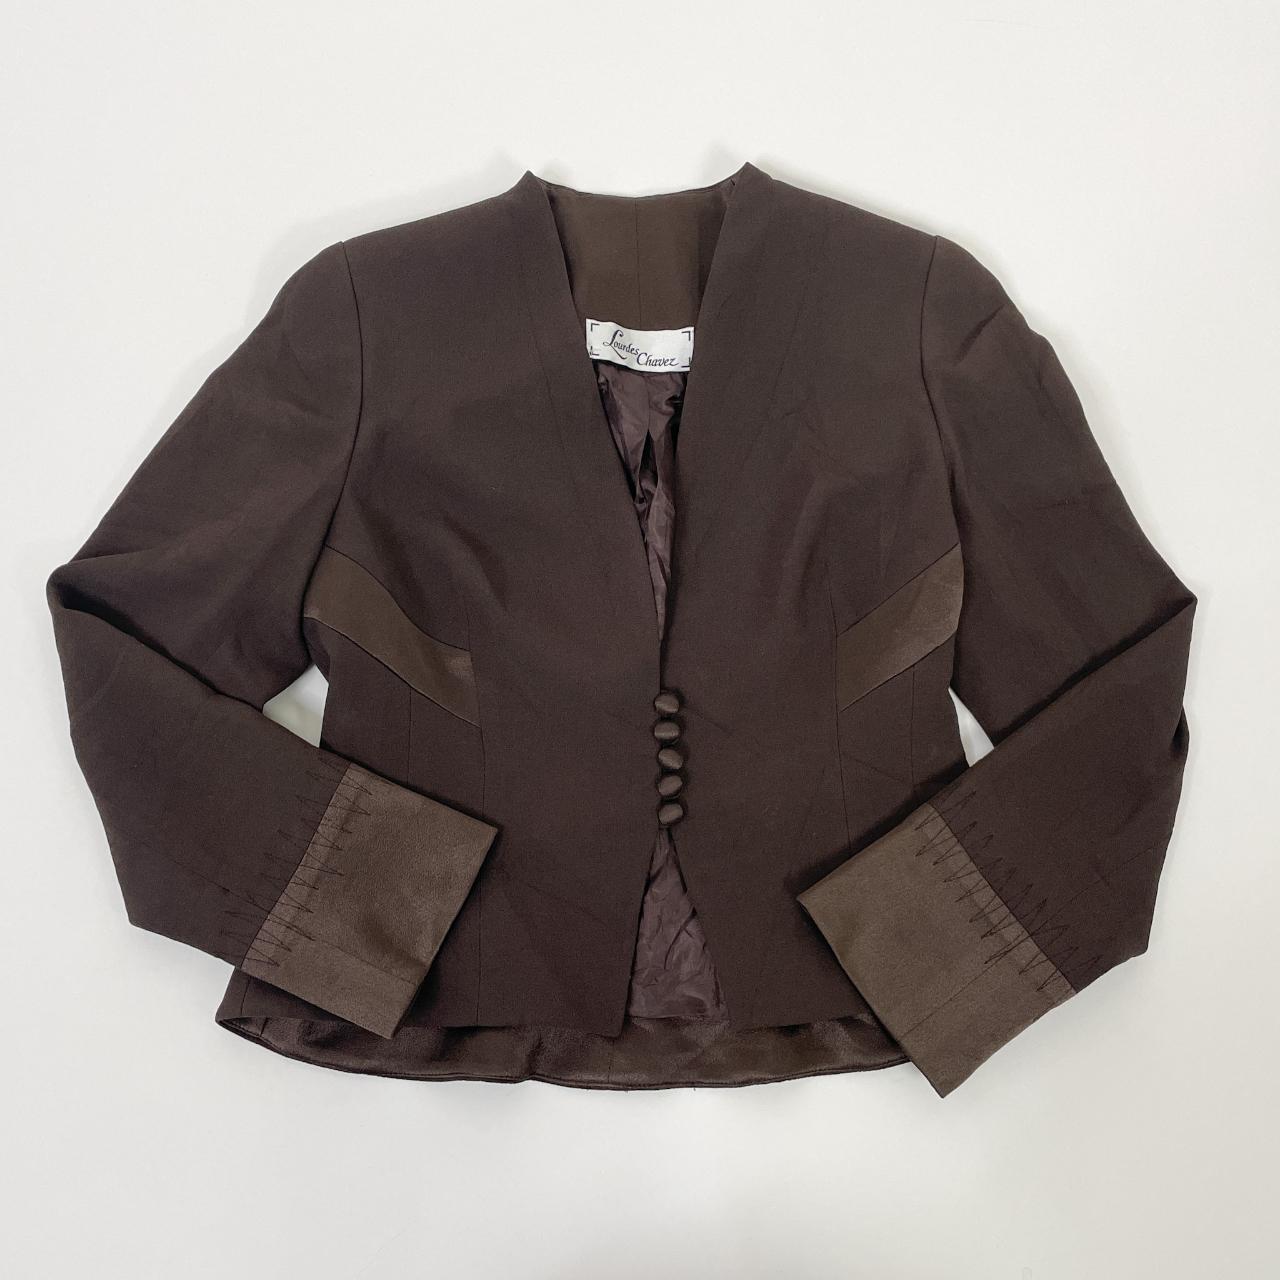 Lourdes Women's Brown Jacket (4)